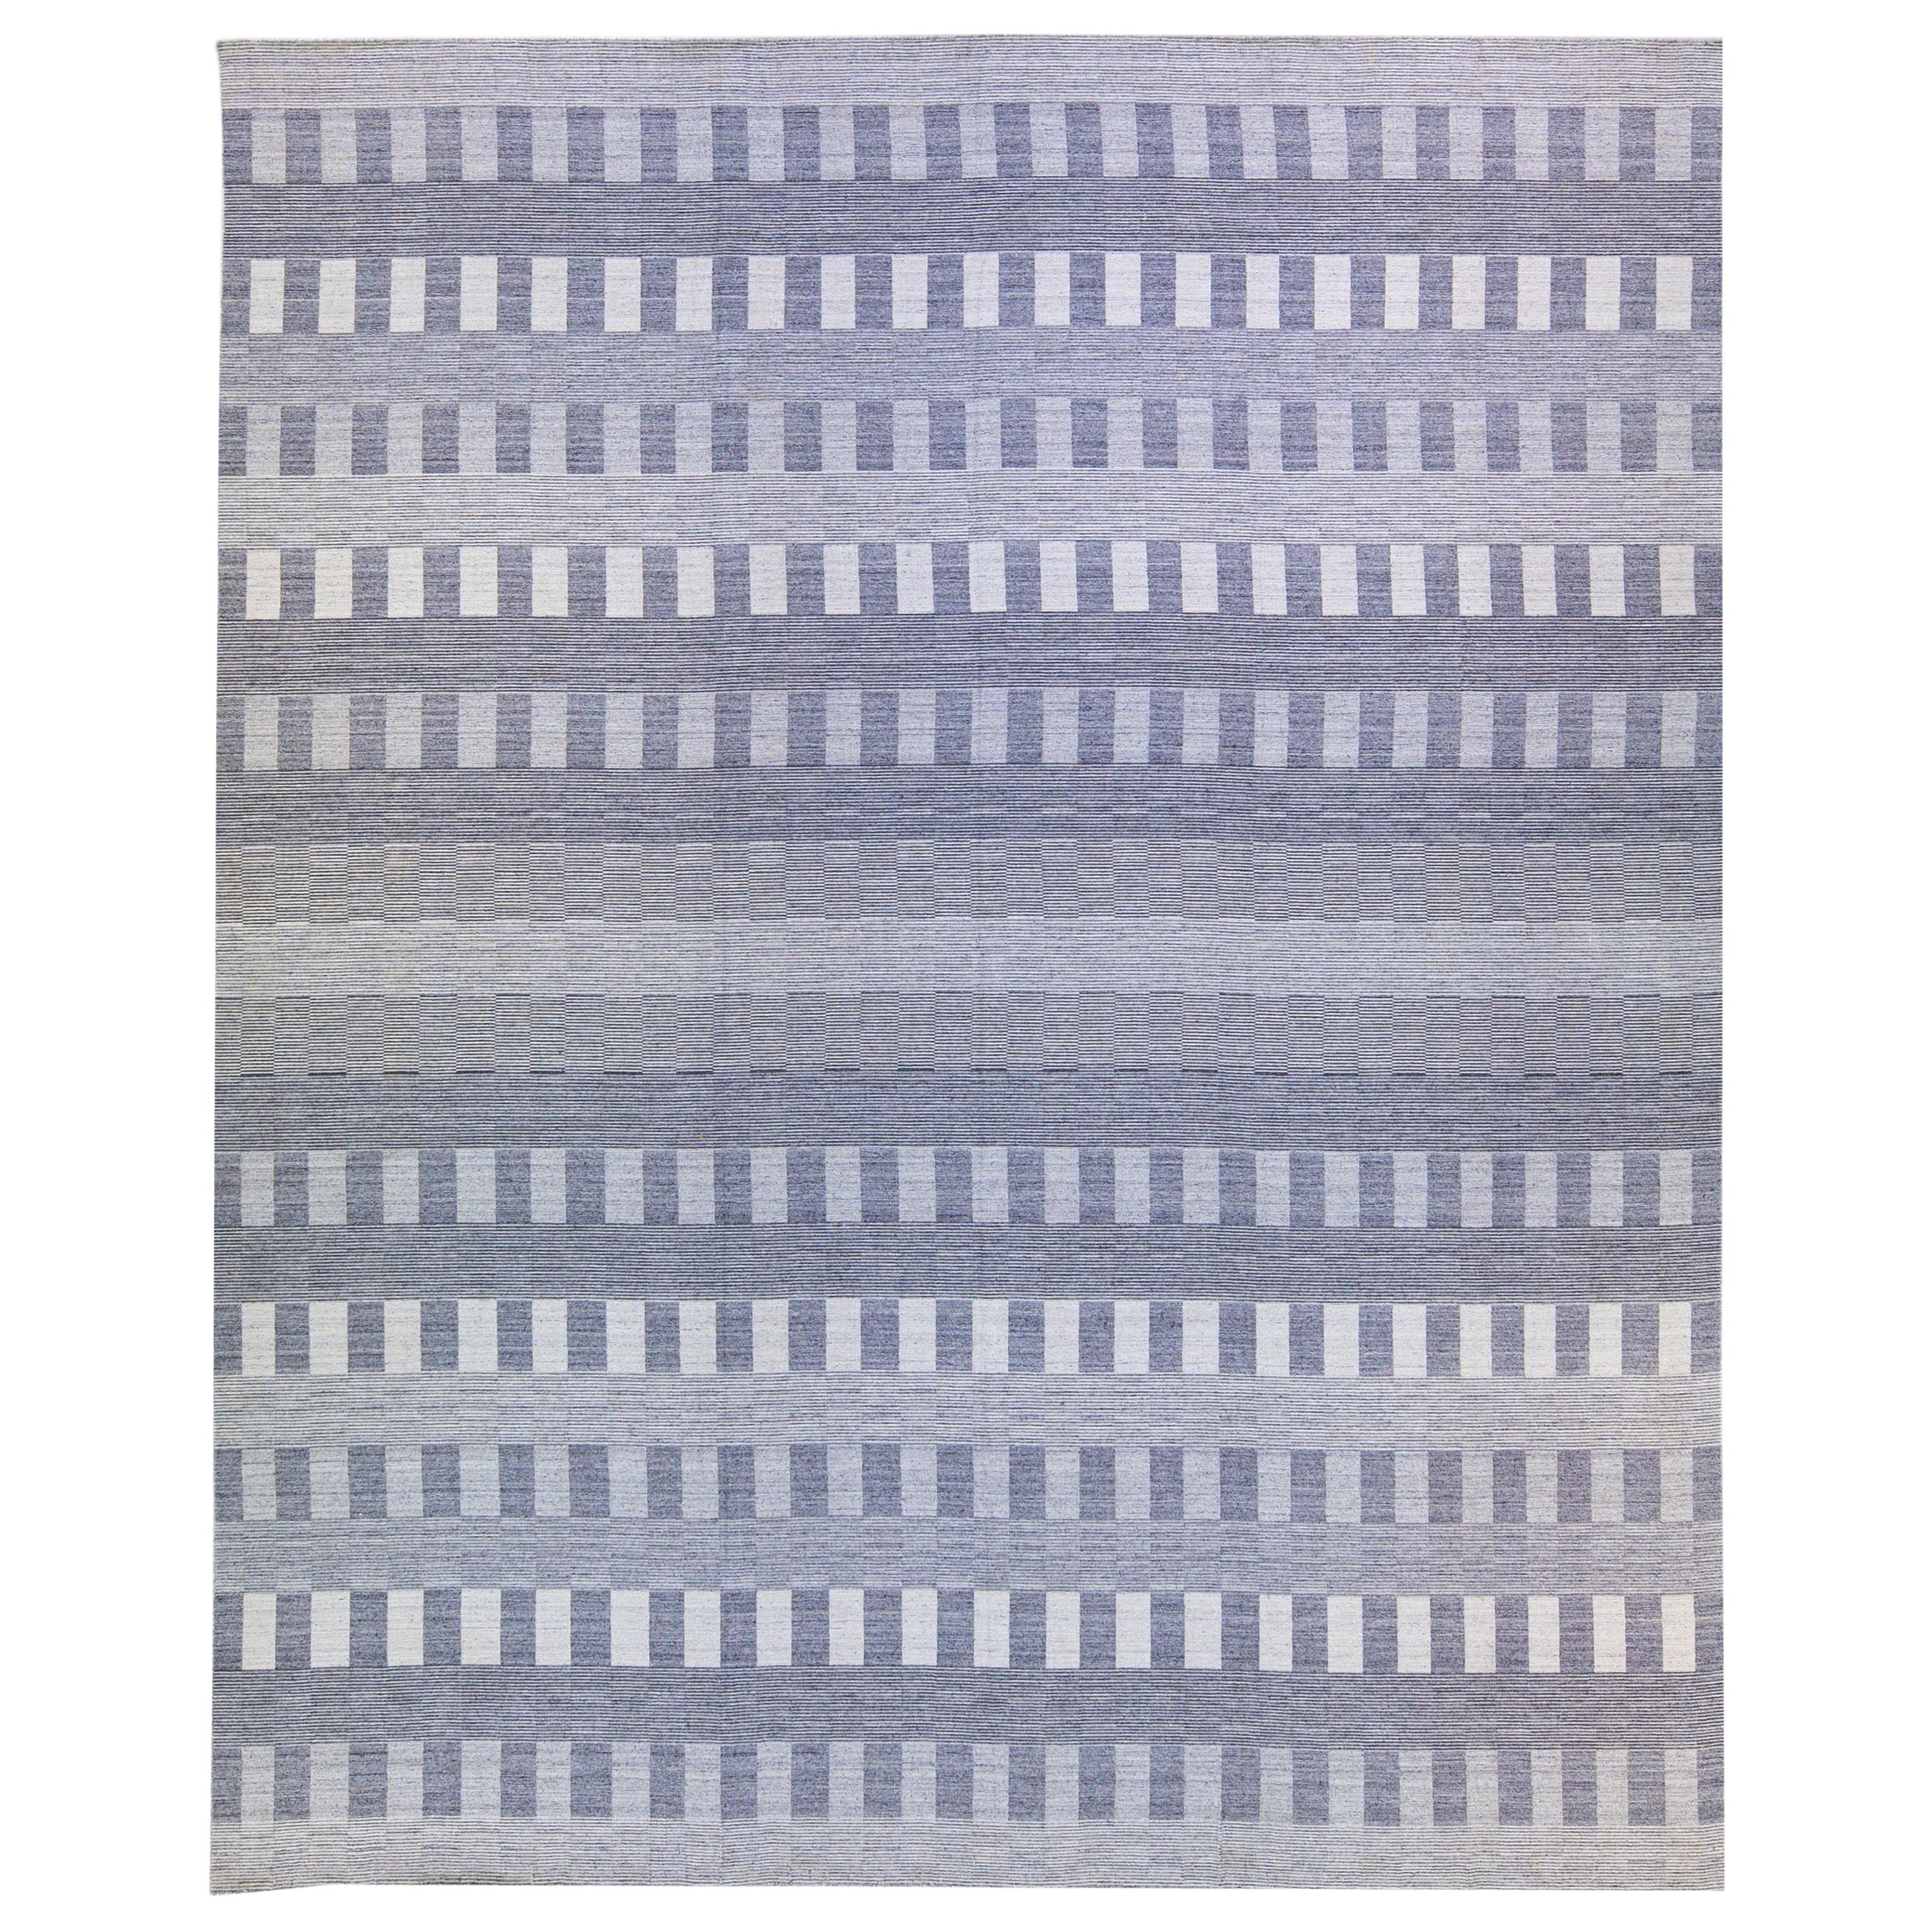 Tapis Kilim moderne en laine grise surdimensionné à motif géométrique sans couture, tissé à plat